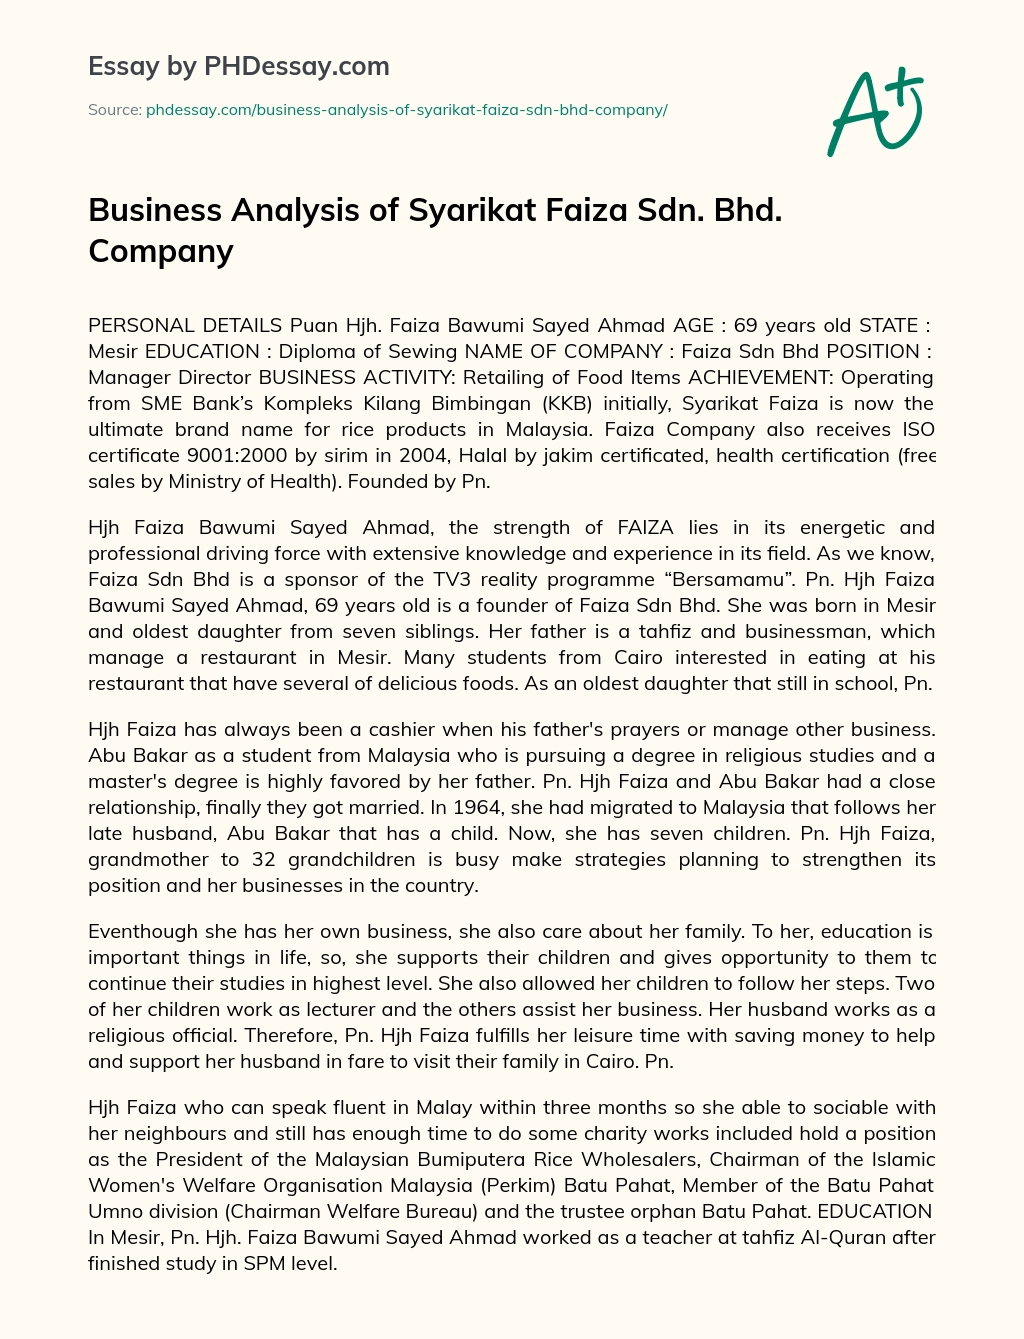 Business Analysis of Syarikat Faiza Sdn. Bhd. Company essay